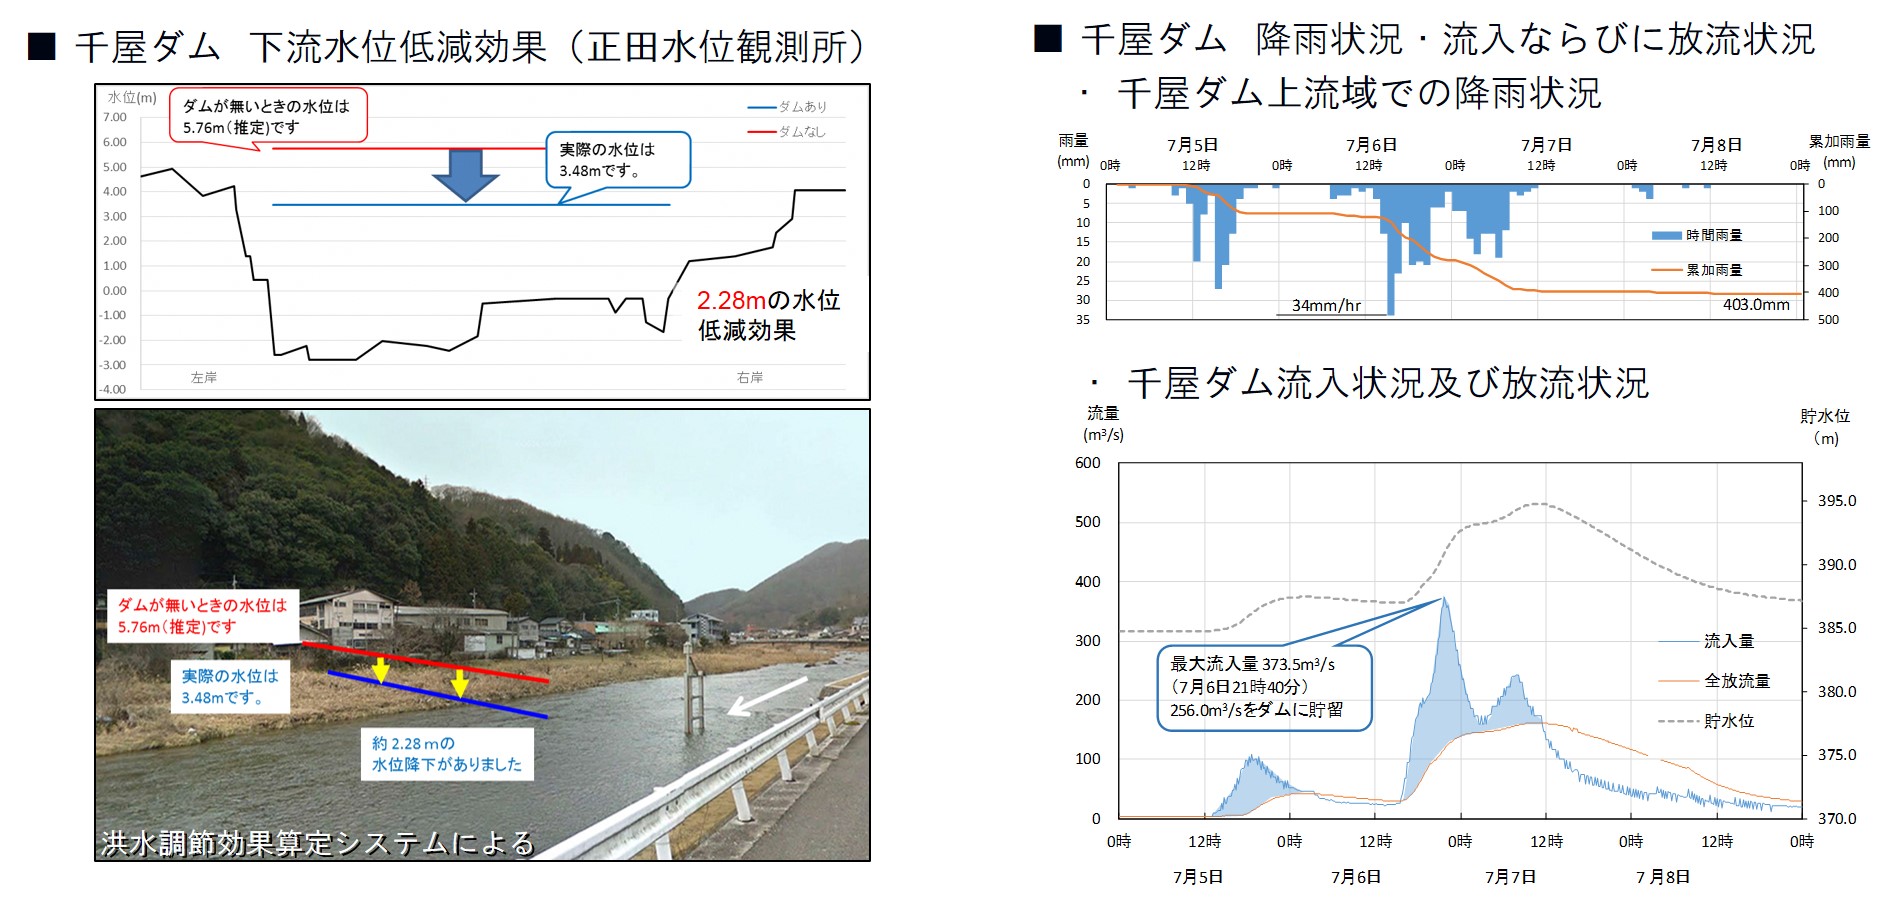 千屋ダムの洪水調節効果（下流の水位低減）